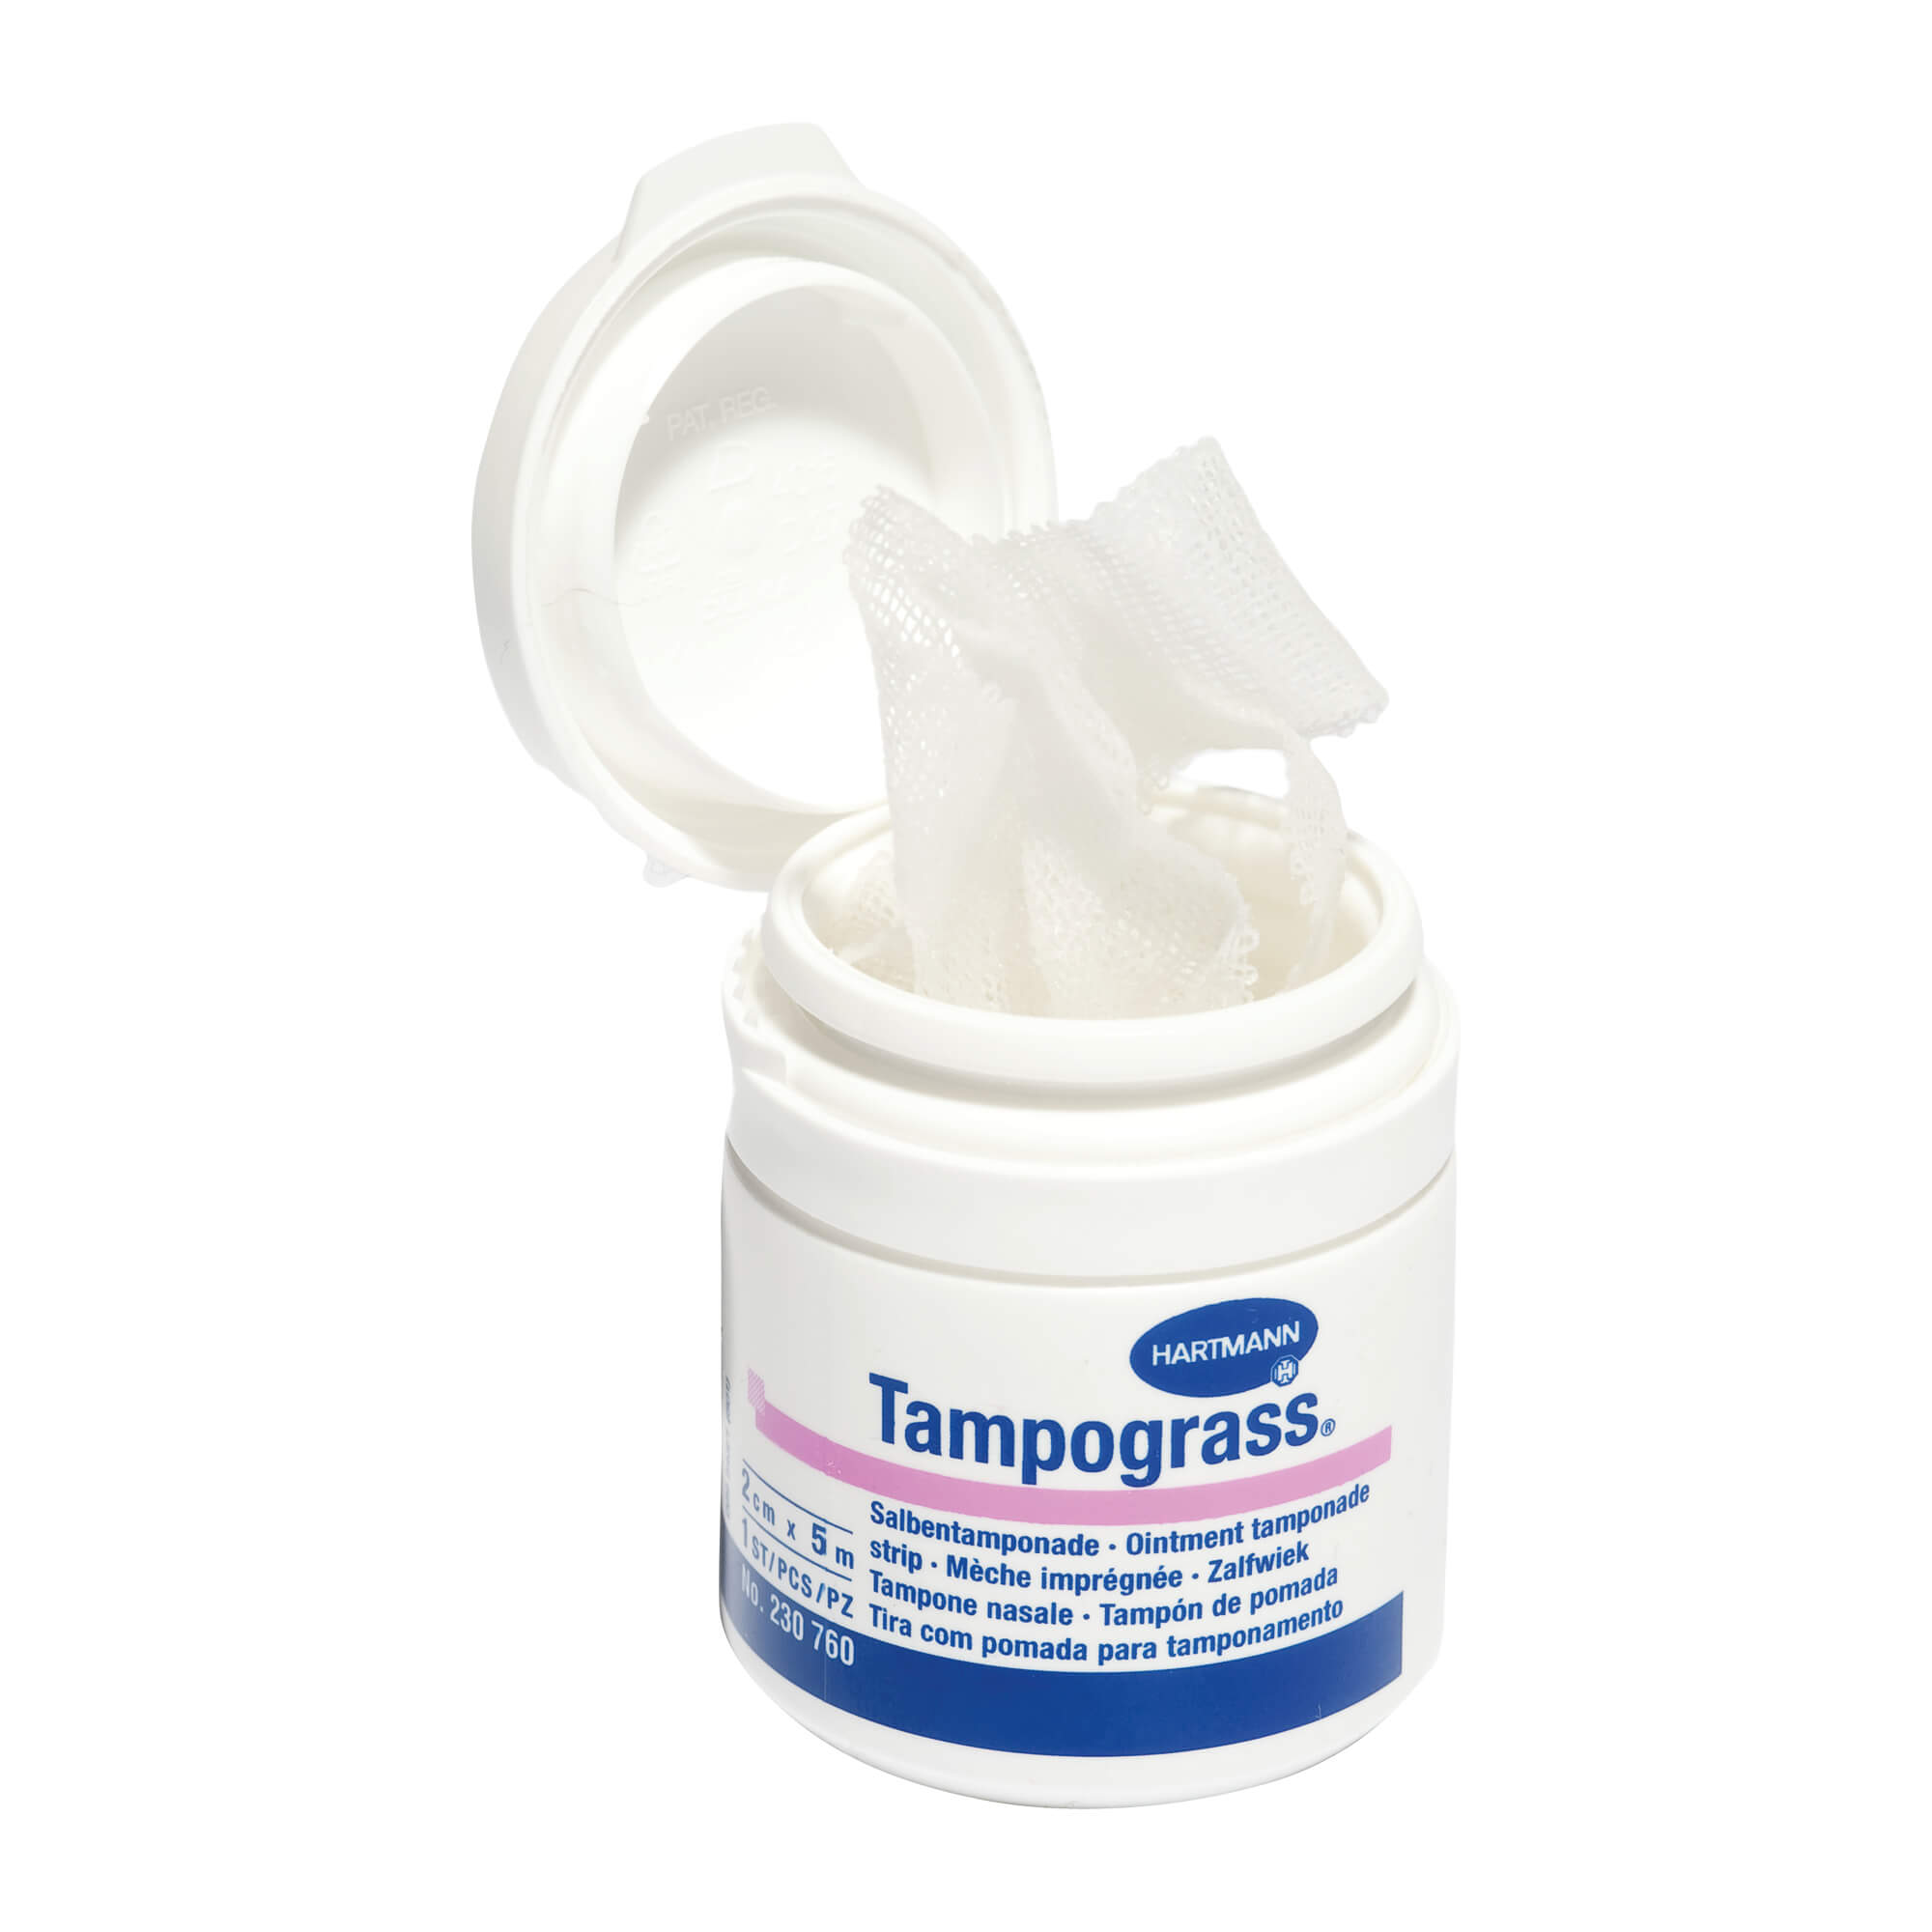 Salbentamponade für gewebeschonendes Tamponieren.